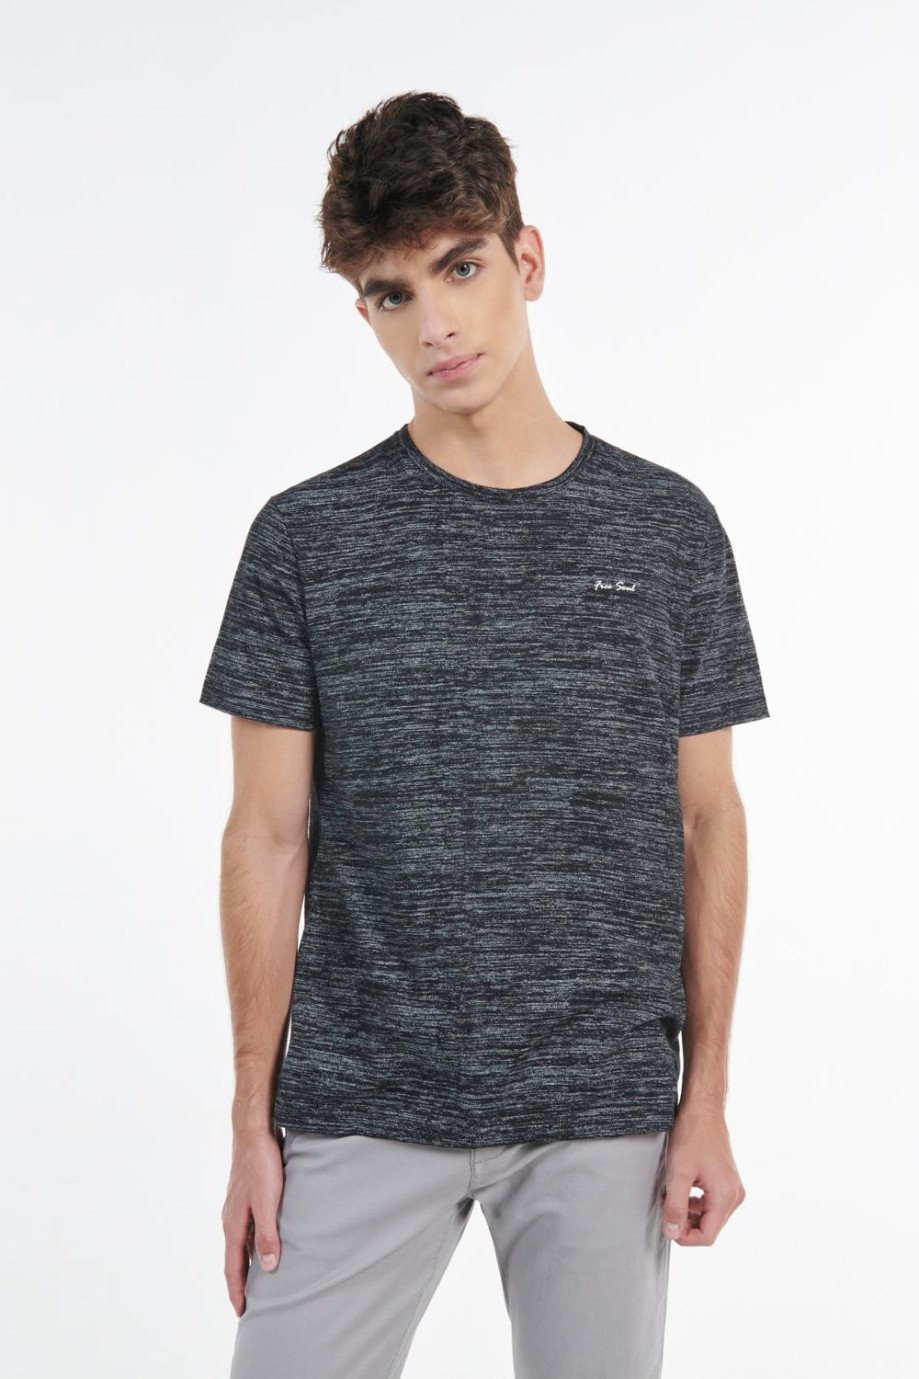 Camiseta negra con cuello redondo, texturas y texto minimalista